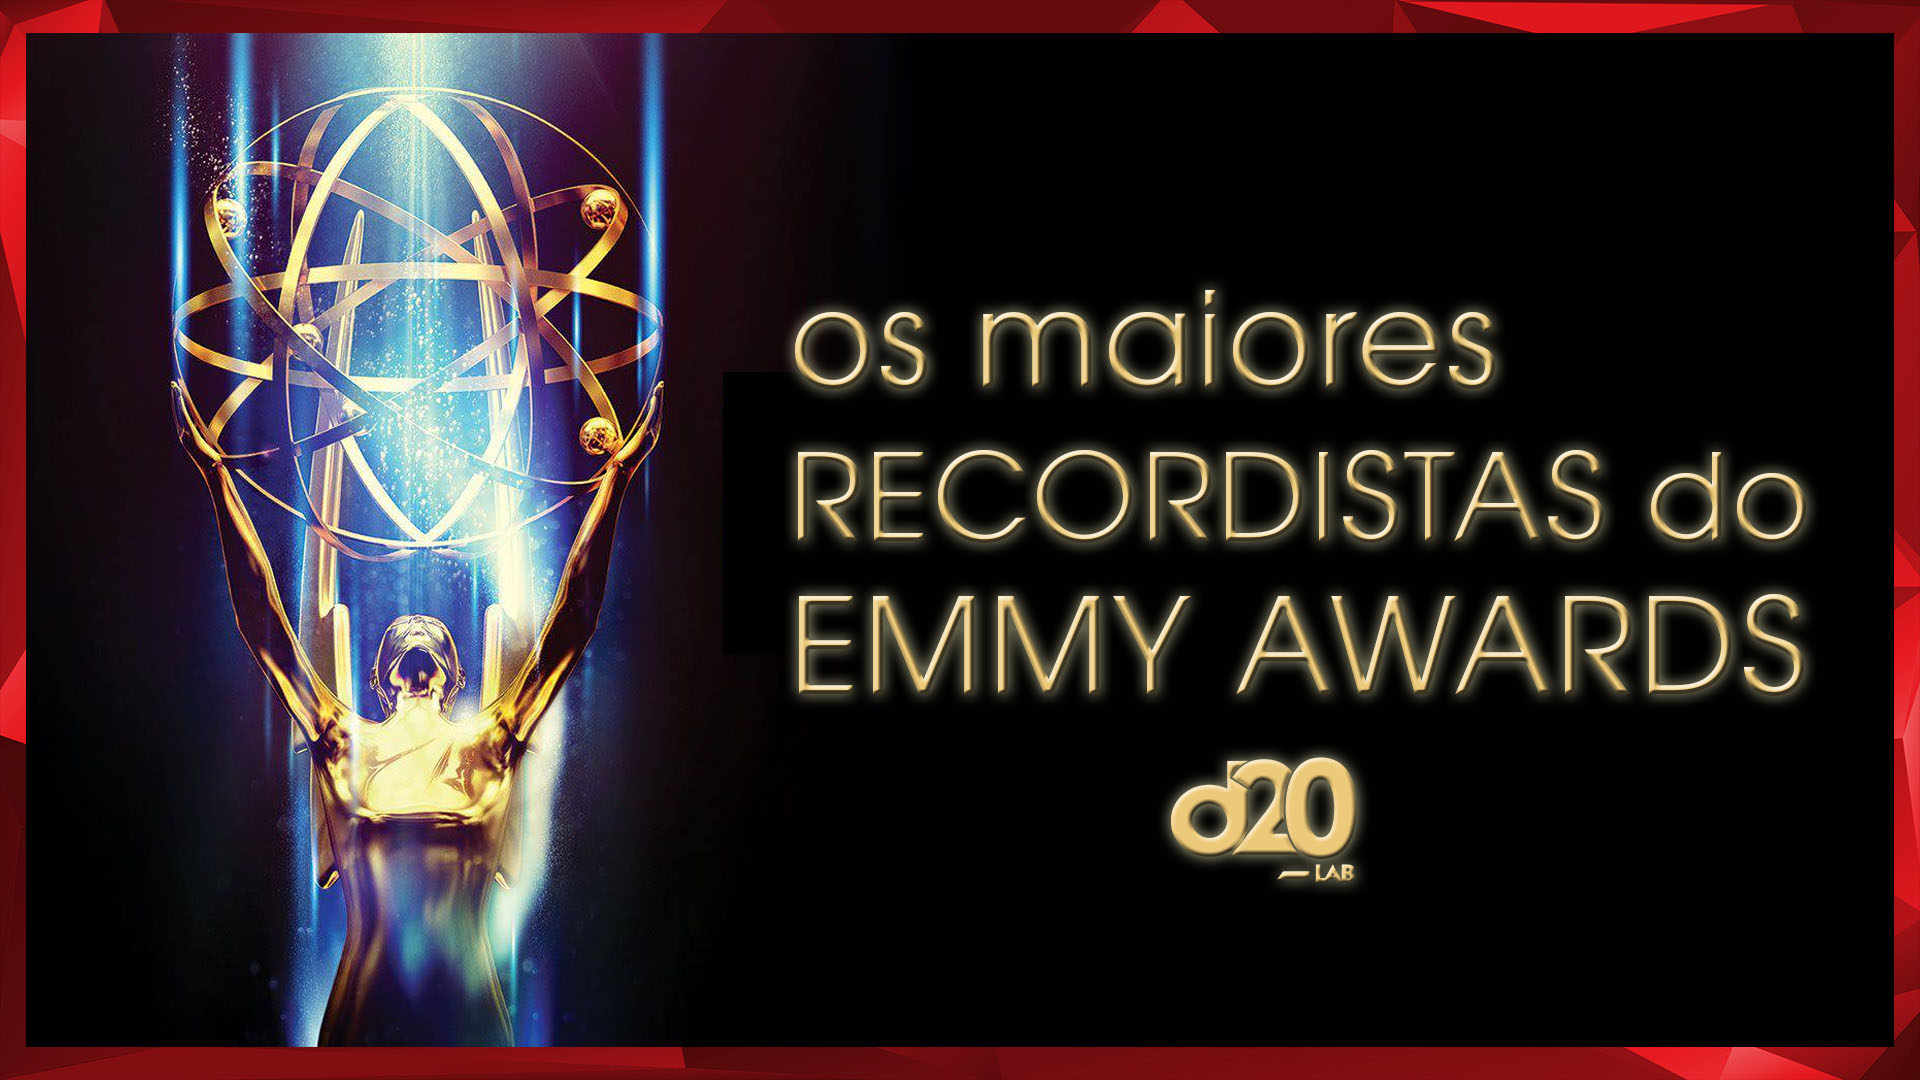 Os Maiores Recordistas do Emmy Awards | D20 Lab 64